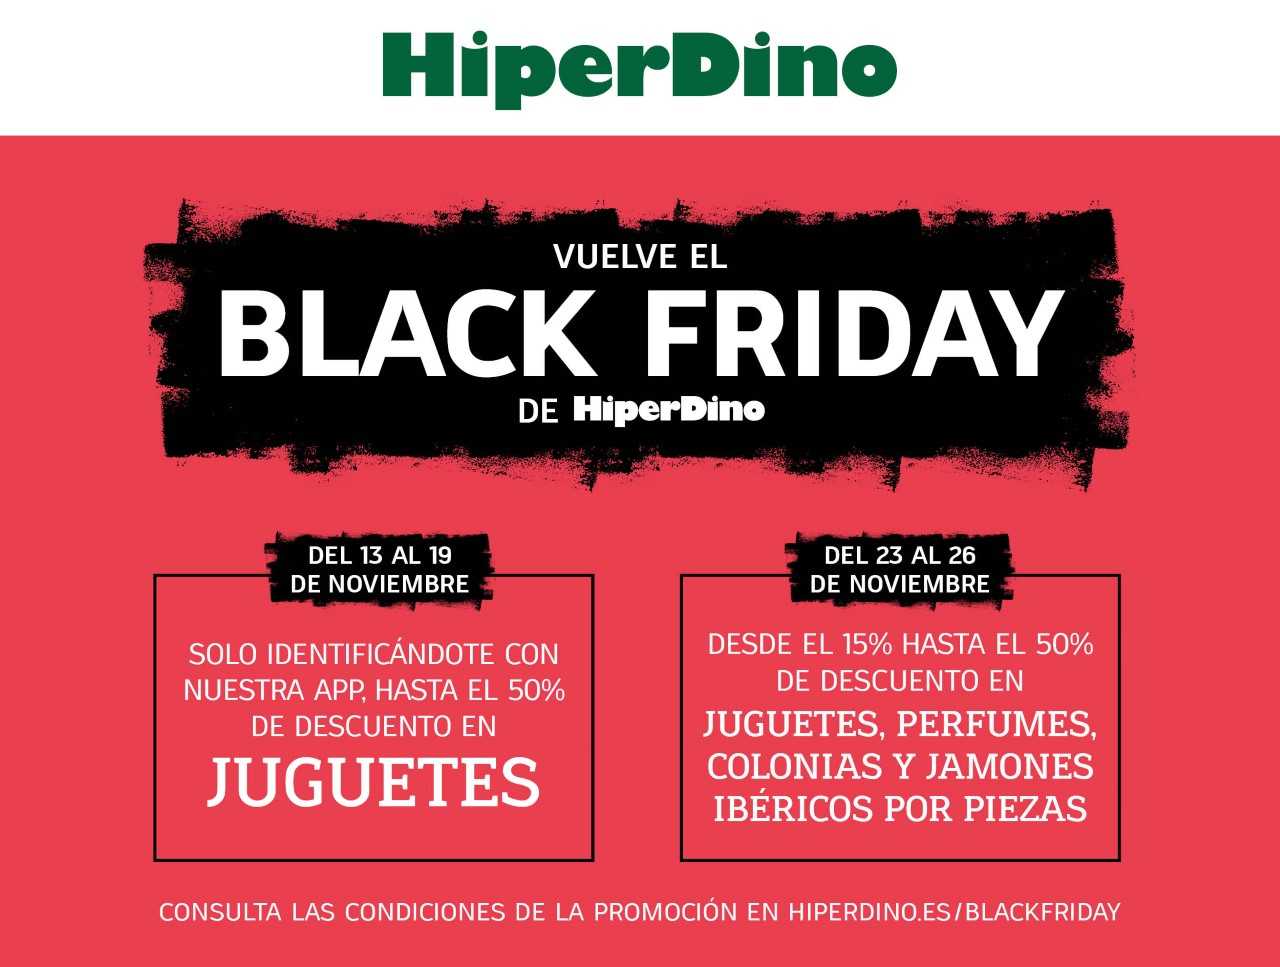 Comienza el Black Friday de HiperDino con juguetes al 50% de descuento